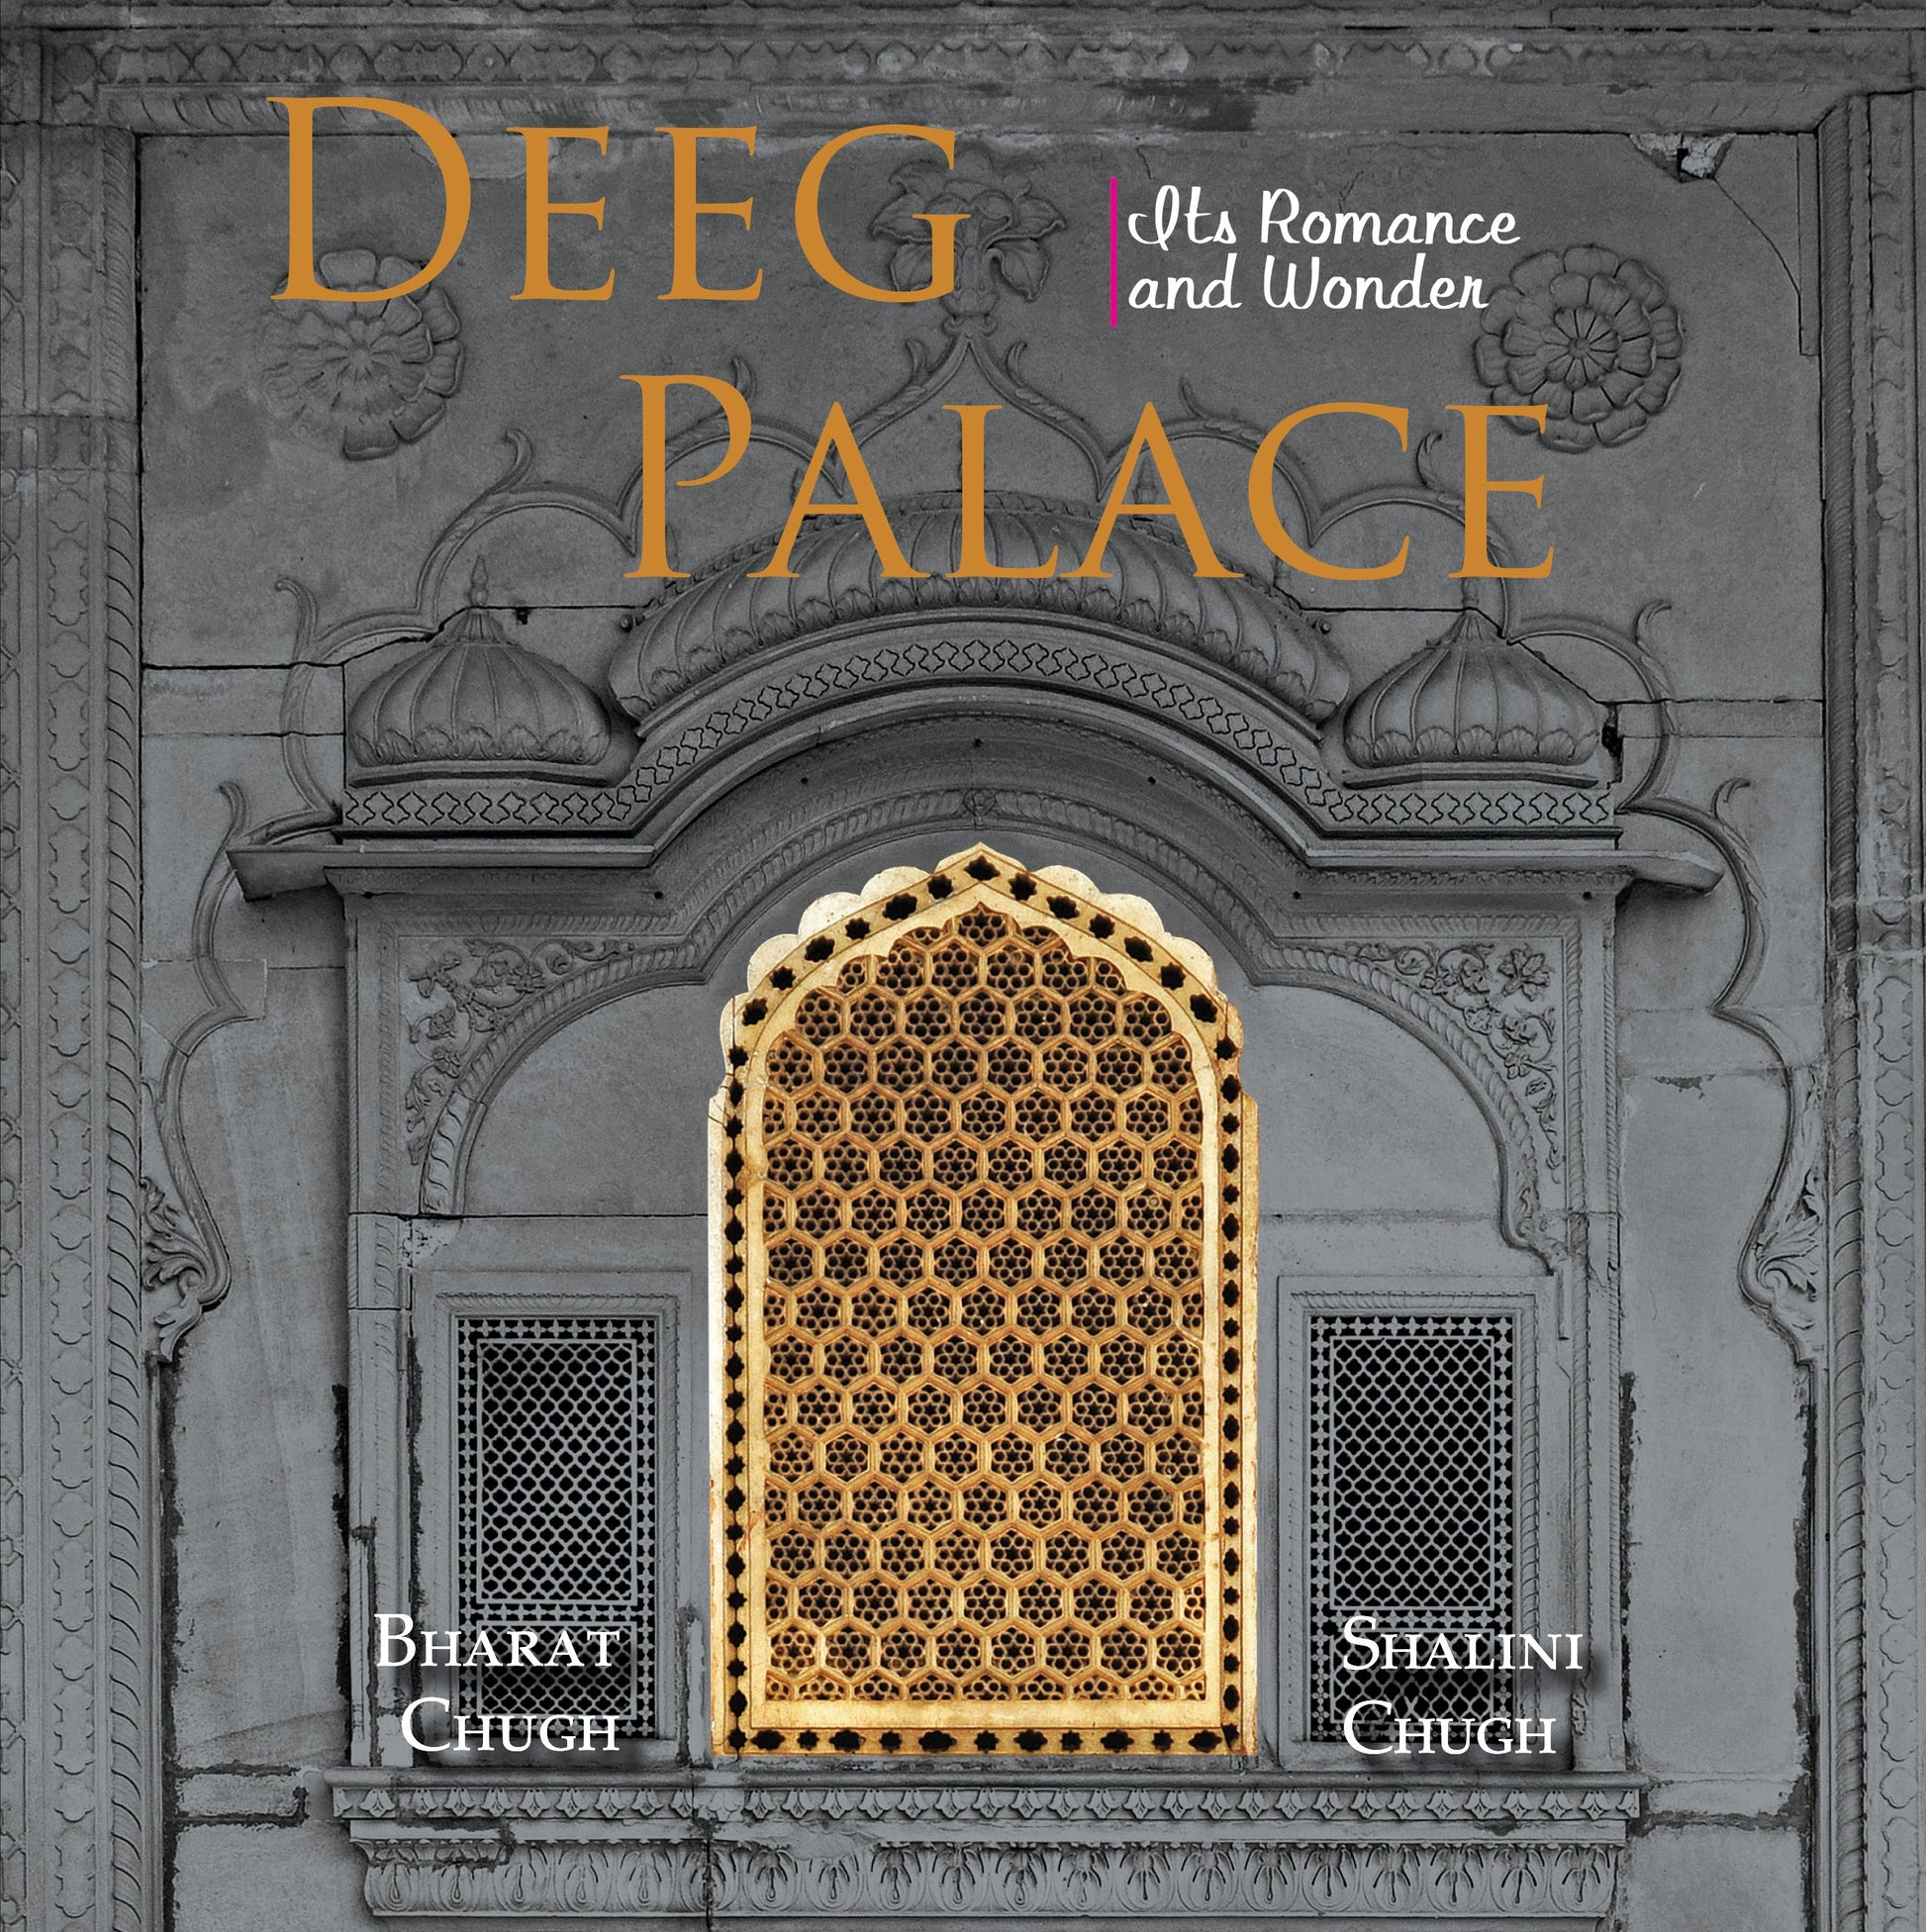 Deeg Palace : Its Romance and Wonder